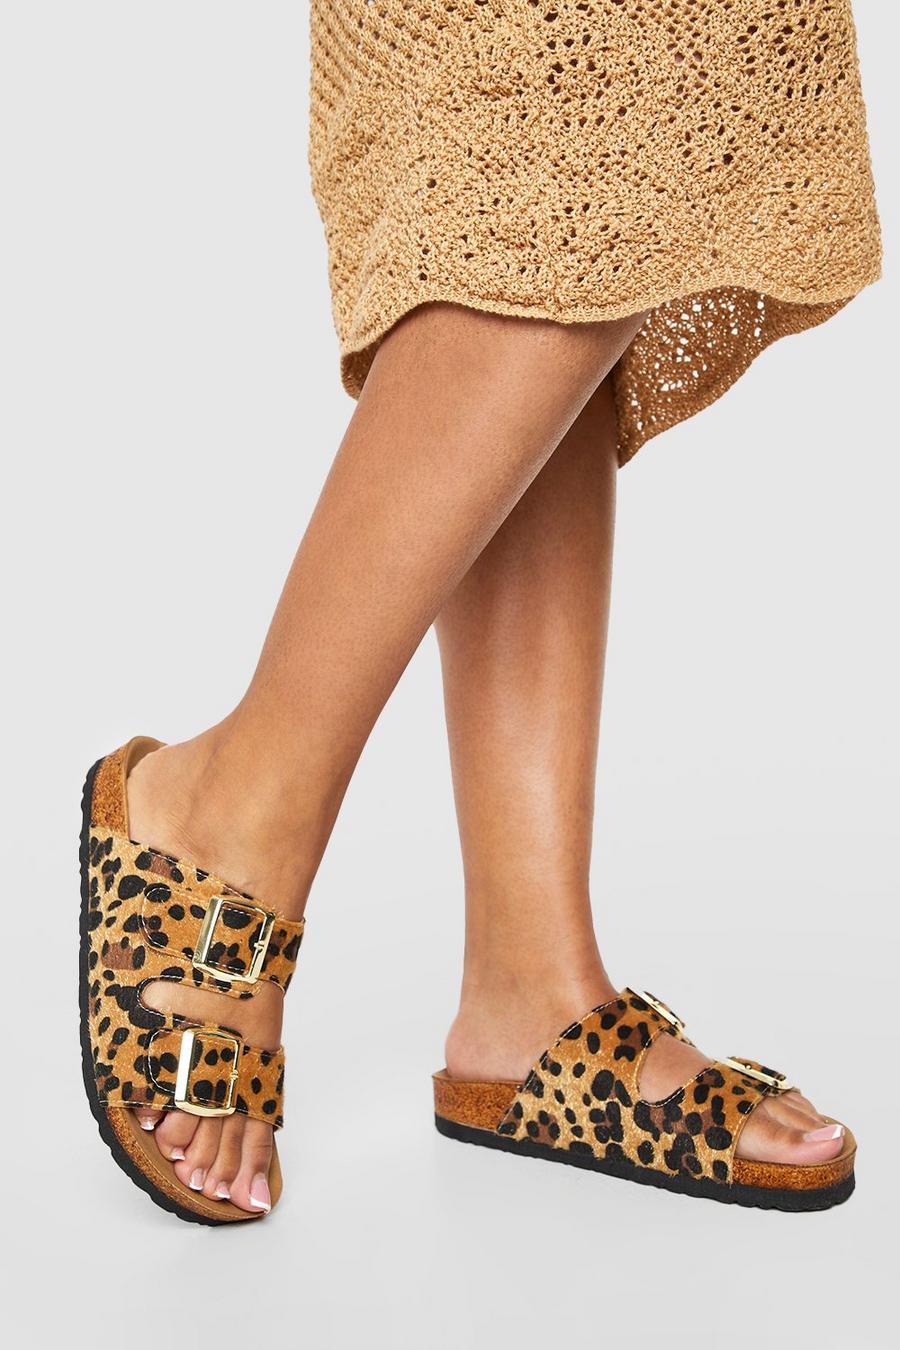 Sandalias de holgura ancha con plantilla blanda, hebilla doble y estampado de leopardo, Leopard